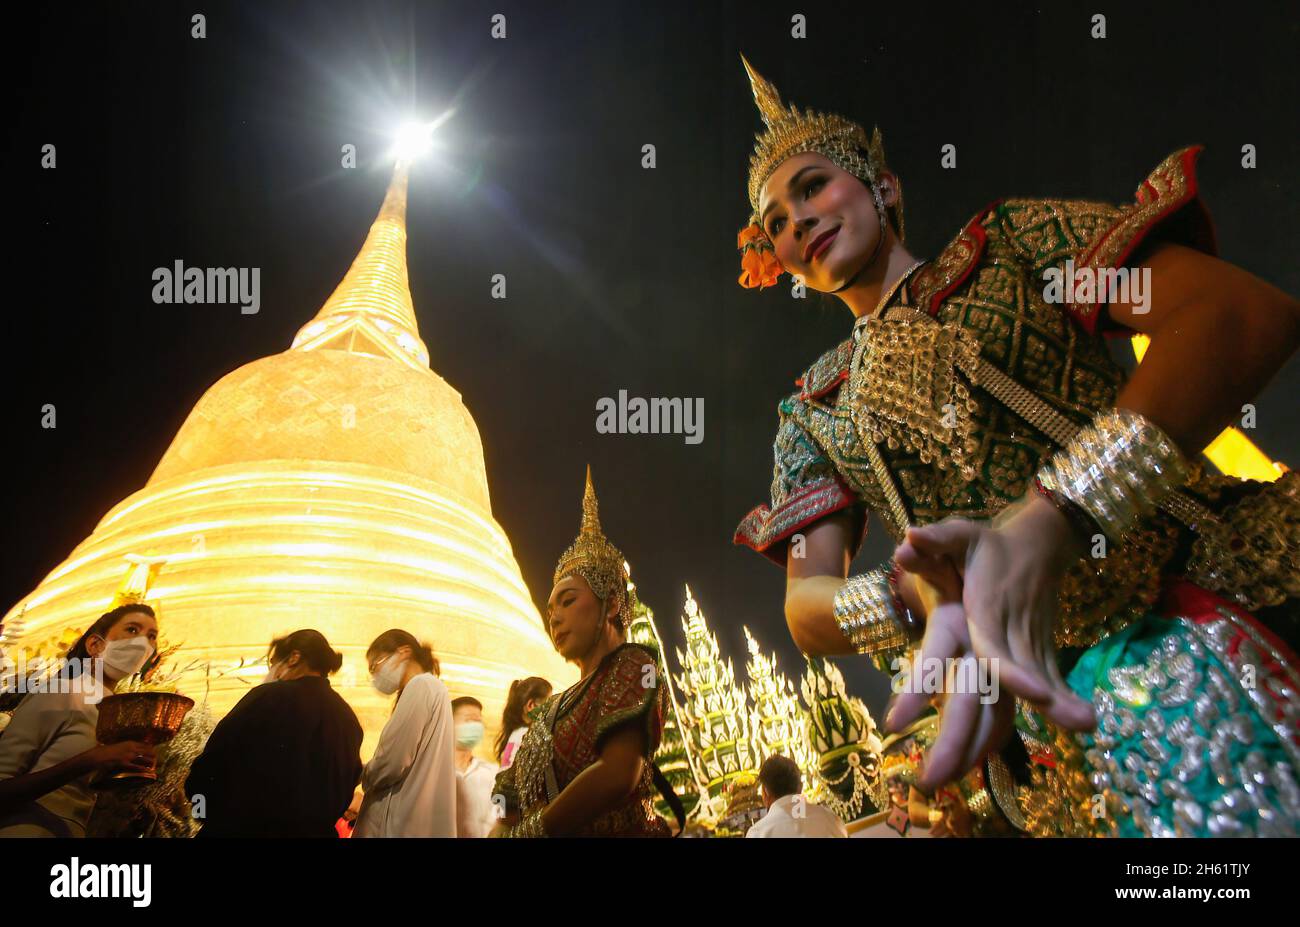 Bangkok, Thailand. November 2021. Eine Tänzerin tritt vor dem Tempel Wat Saket auf, der während des Tempels auch als Goldener Berg bekannt ist und den goldenen Berg mit rotem Tuch umwickelt. Eifrige Anhänger versammelten sich, um den Chedi des Goldenen Berges mit einem heiligen roten Tuch zu umwickeln, was den Beginn des Wat Saket-Festivals markierte. Bevor sich die Gläubigen zu einer multikulturellen Parade anstellten, die aus Löwentänzern, traditionellen thailändischen Tänzern, Studenten der Tempelschule und spirituellen Brahmanen bestand. Namen von Familien und Angehörigen wurden in der Hoffnung, ein gutes Fortu zu erreichen, auf die über hundert Meter lange Strecke geschrieben Stockfoto